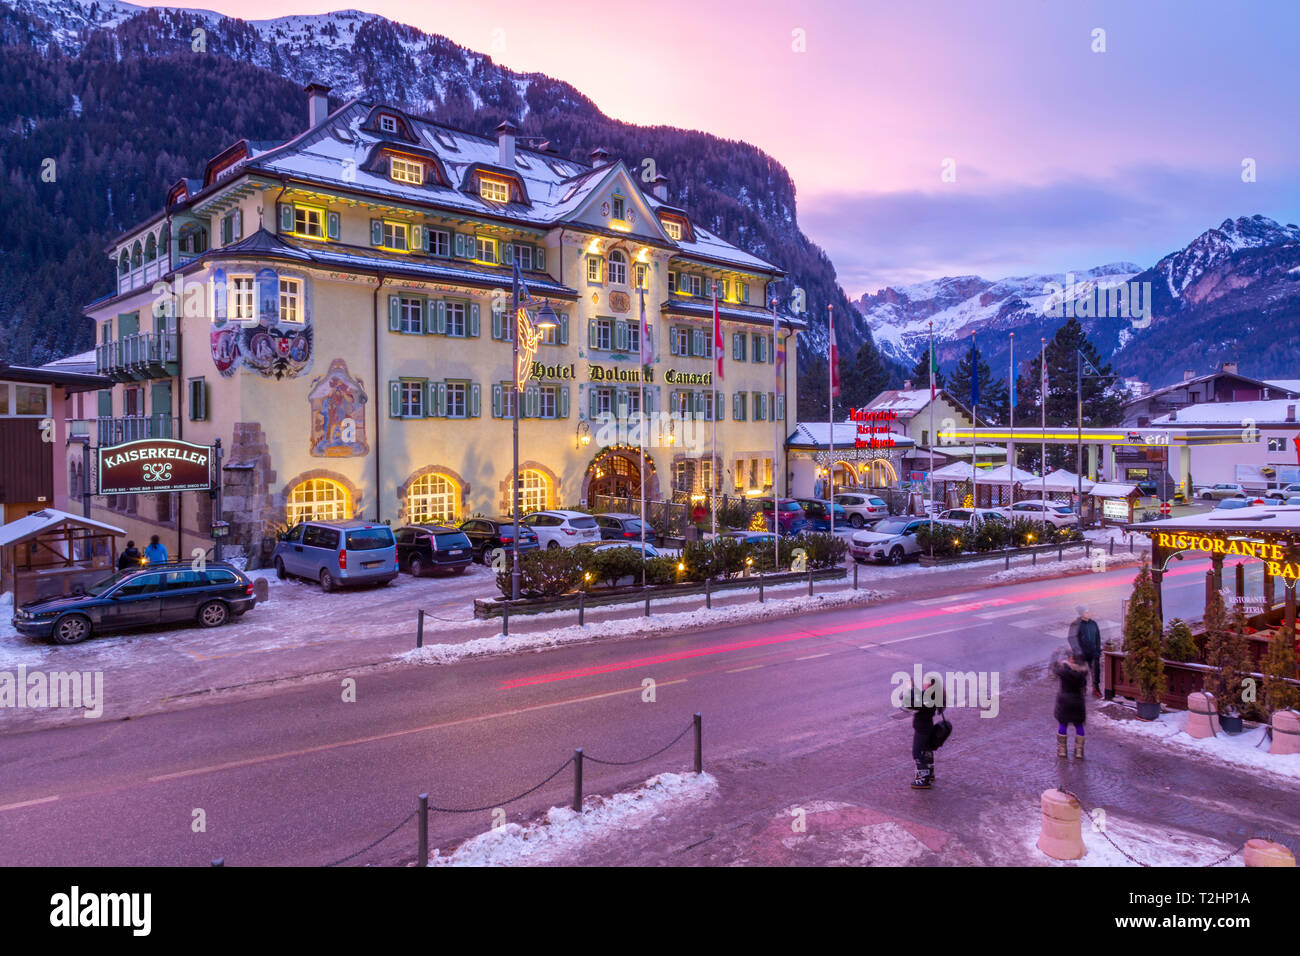 Avis de l'Hôtel Dolomiti Canazei au crépuscule en hiver, Canazei, Val di Fassa, Trentin, Italie, Europe Banque D'Images